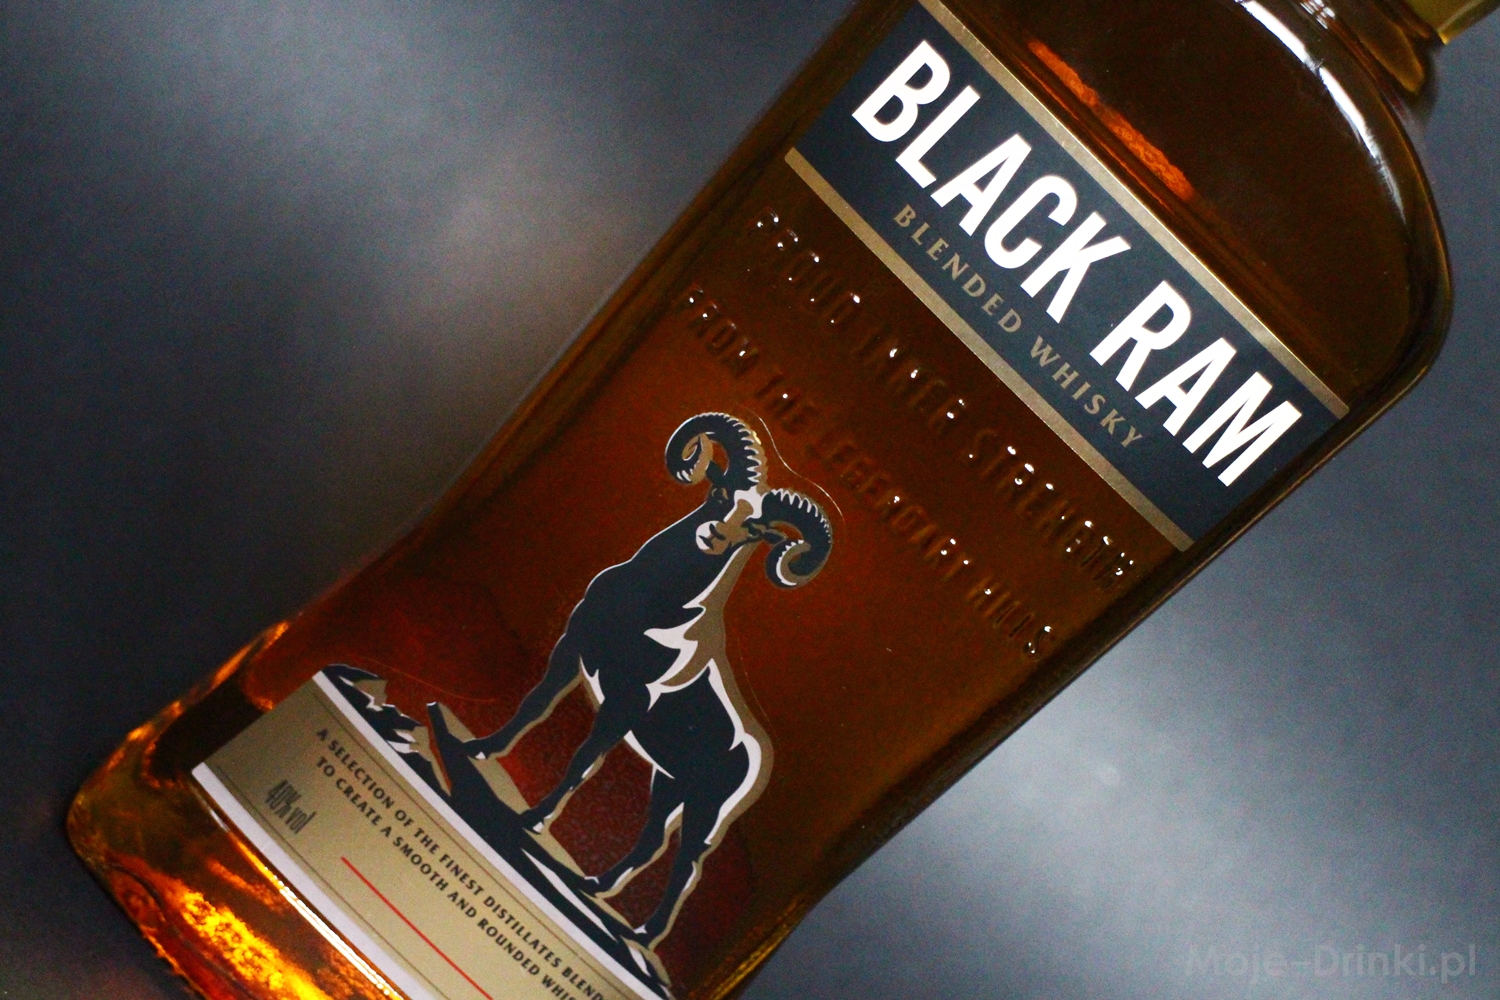 Black Ram whisky